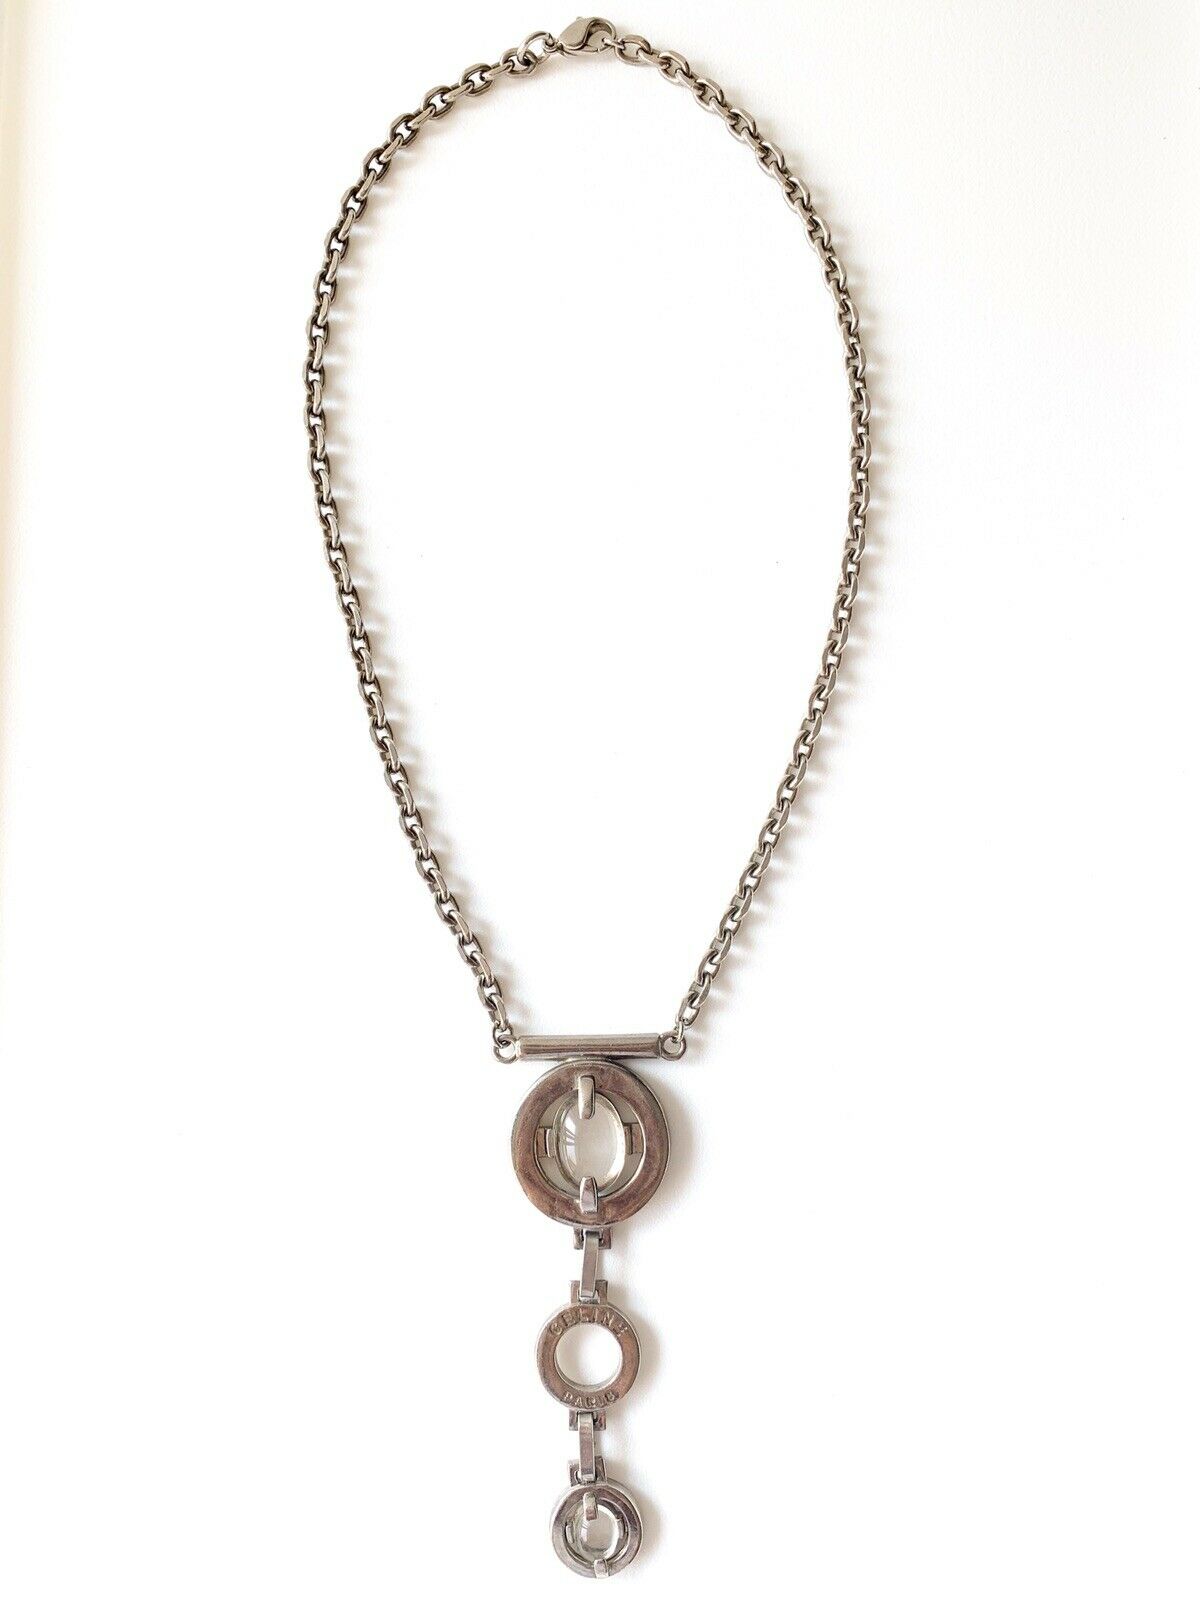 CELINE PARIS Silver Tone Chain Necklace Vintage Cabochon Glass